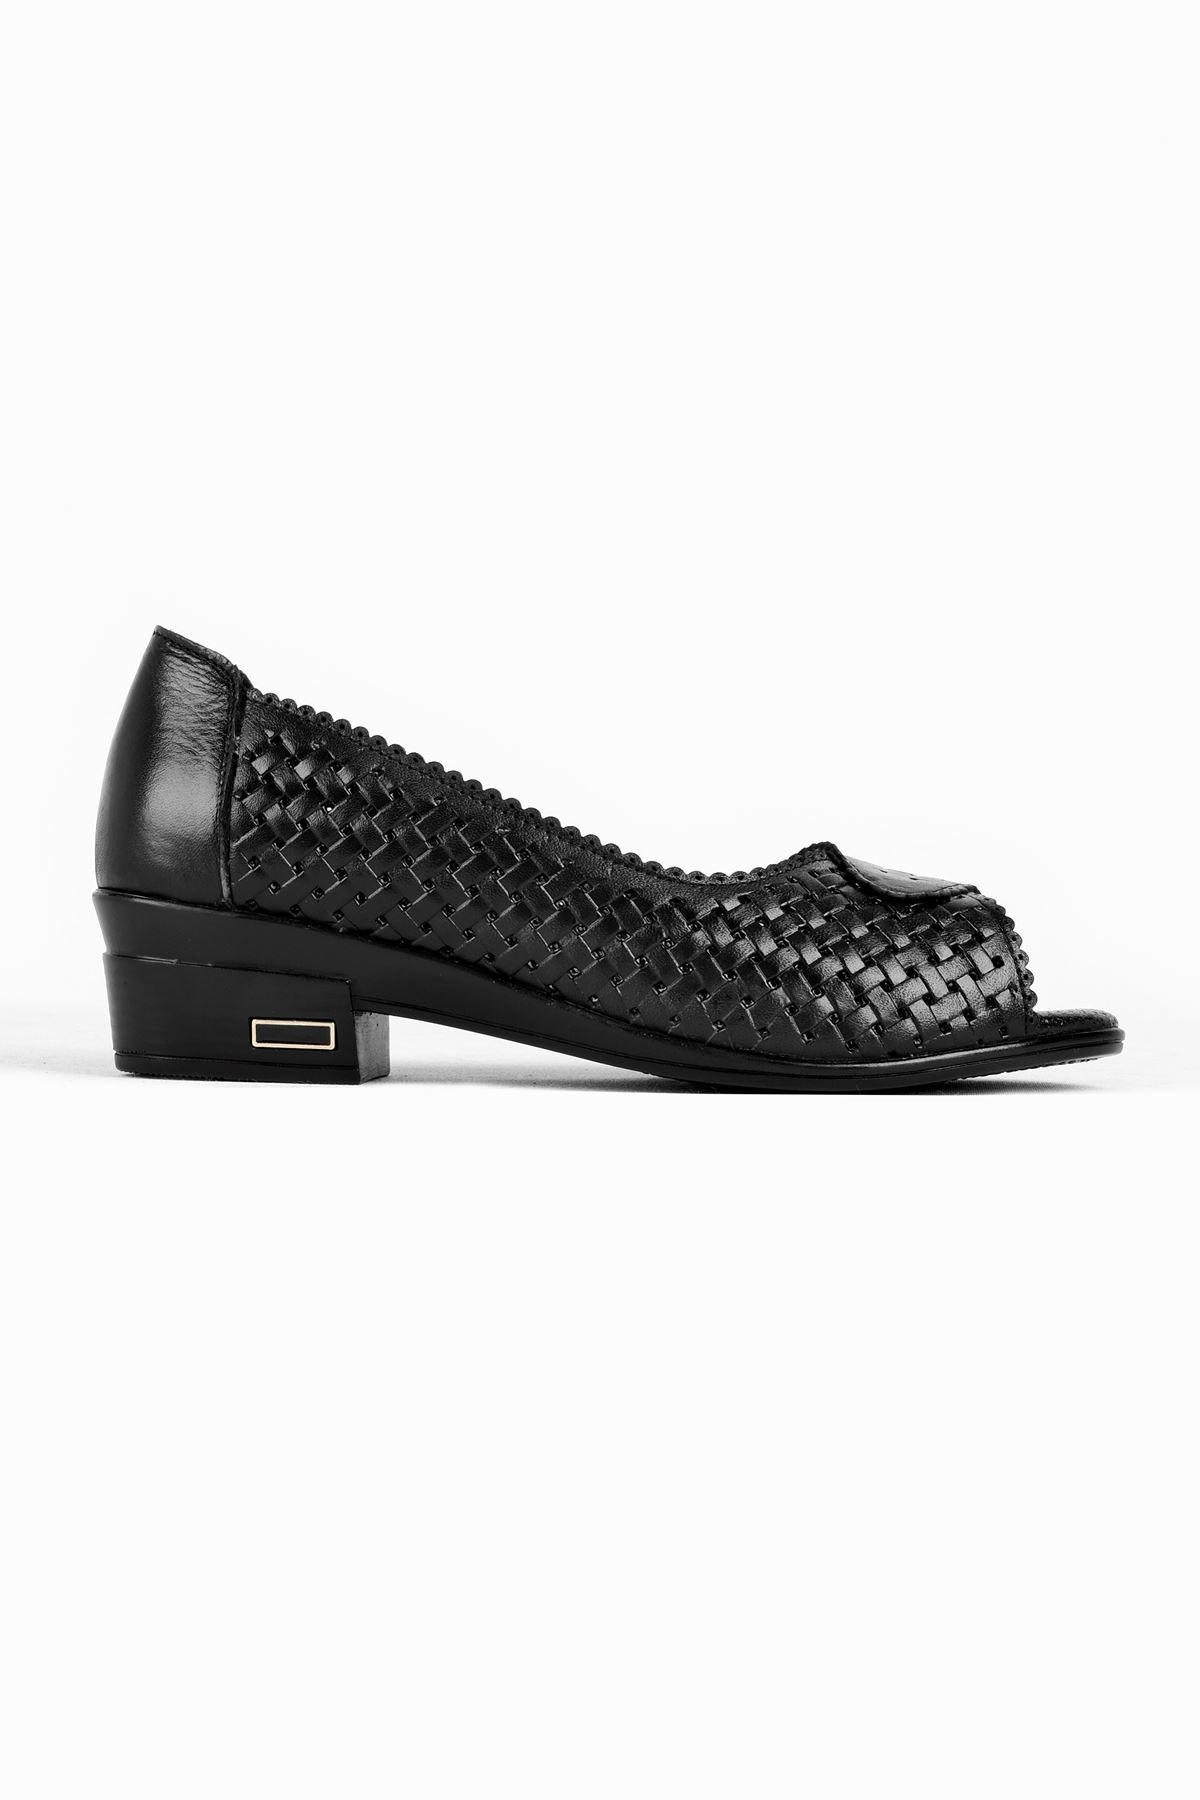 Groles Önü Açık Kadın Hakiki Deri Günlük Ayakkabı B3179 - Siyah